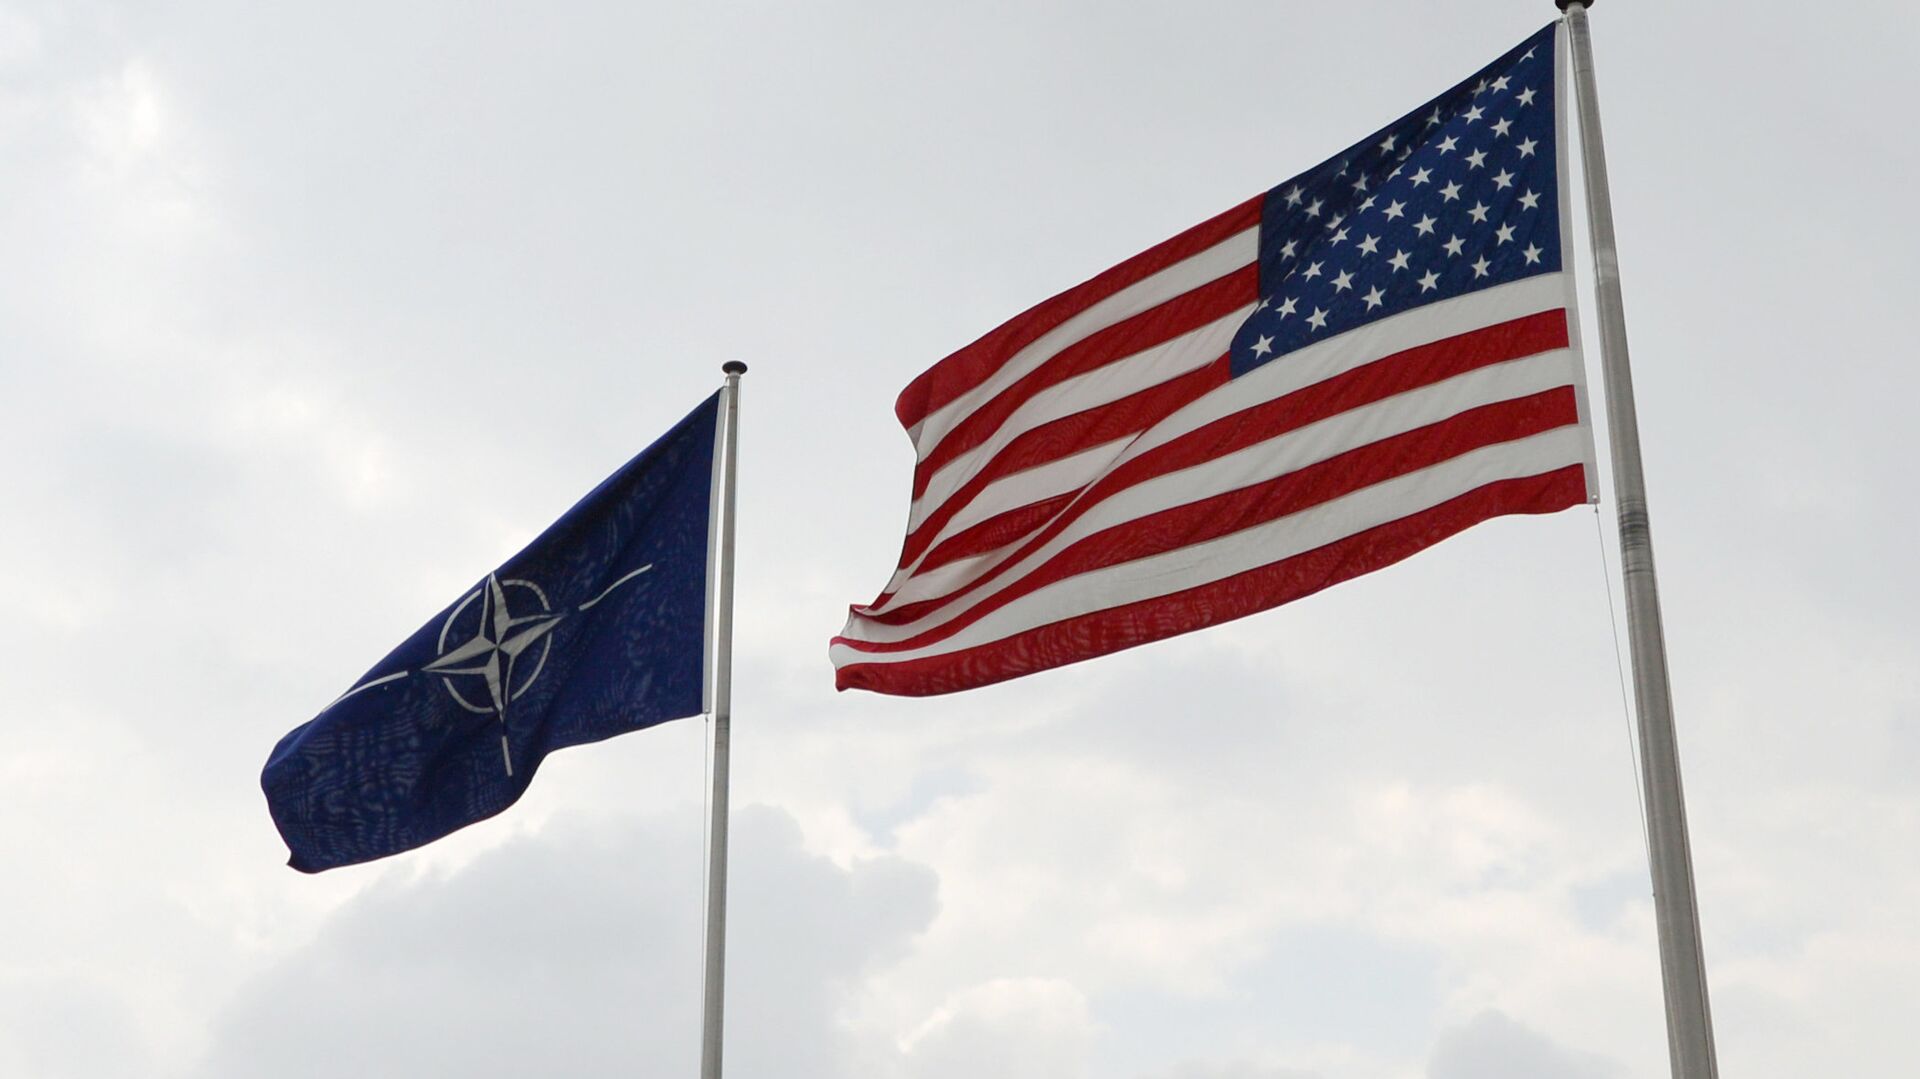 Banderas de EEUU y la OTAN en la sede de la alianza atlántica en Bruselas - Sputnik Mundo, 1920, 23.12.2021